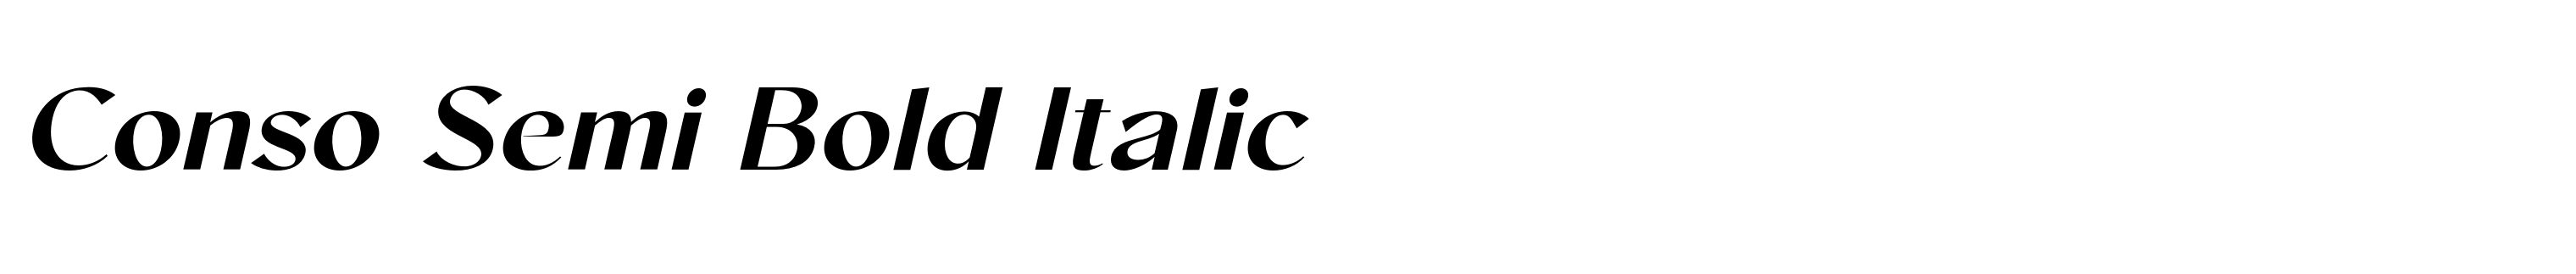 Conso Semi Bold Italic